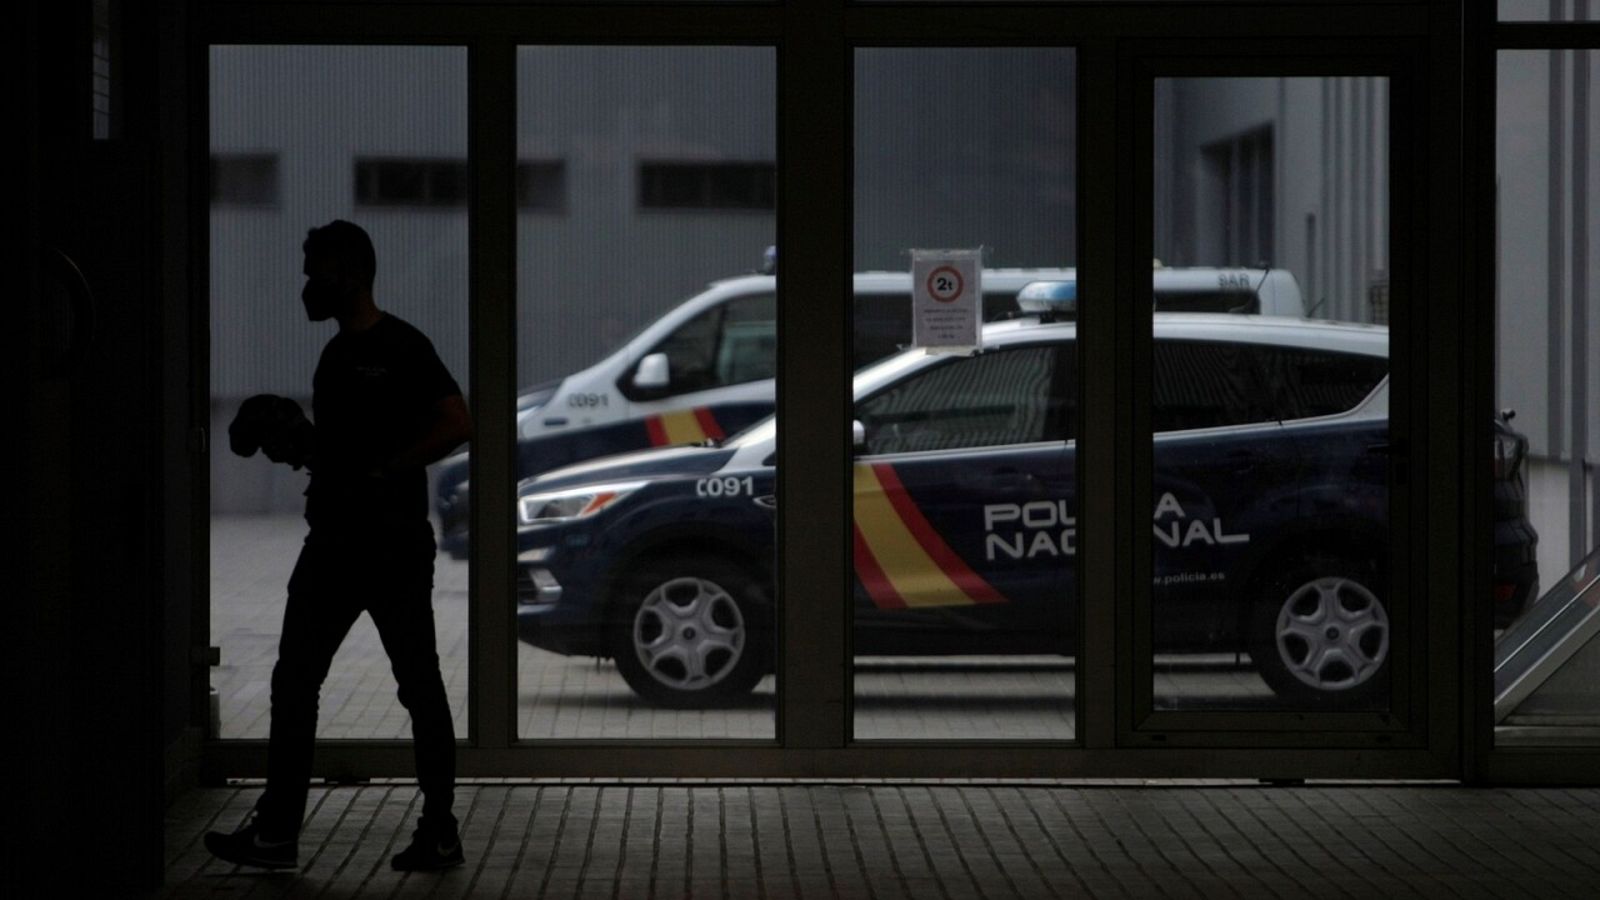 Cuartel de Lonzas de A Coruña, donde se encuentran detenidos los tres jóvenes de entre 20 y 25 años, dos varones y una mujer, como presuntos autores de la agresión violenta que acabó con la vida de Samuel Luiz en la madrugada del sábado en A Coruña.